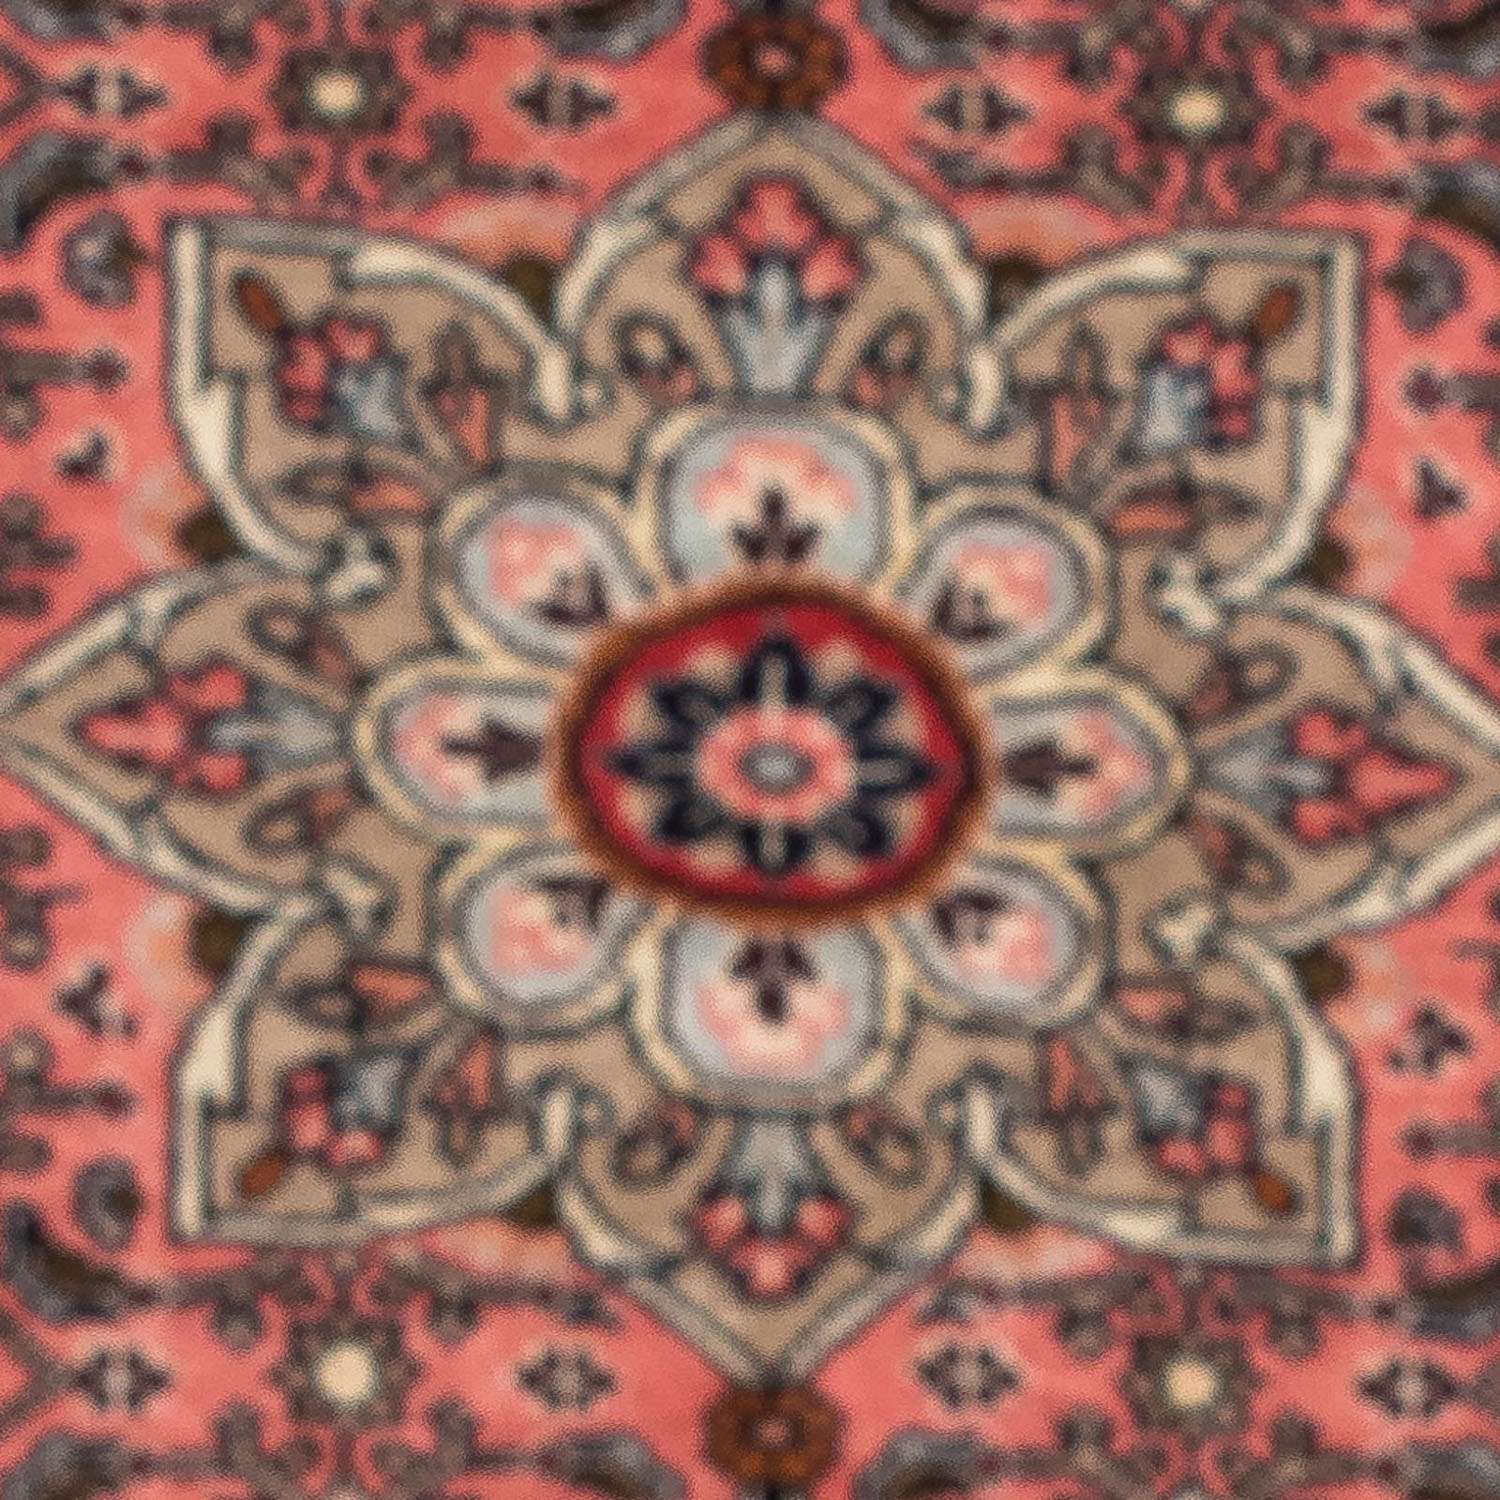 Persisk tæppe - Nomadisk - 123 x 75 cm - lysrød